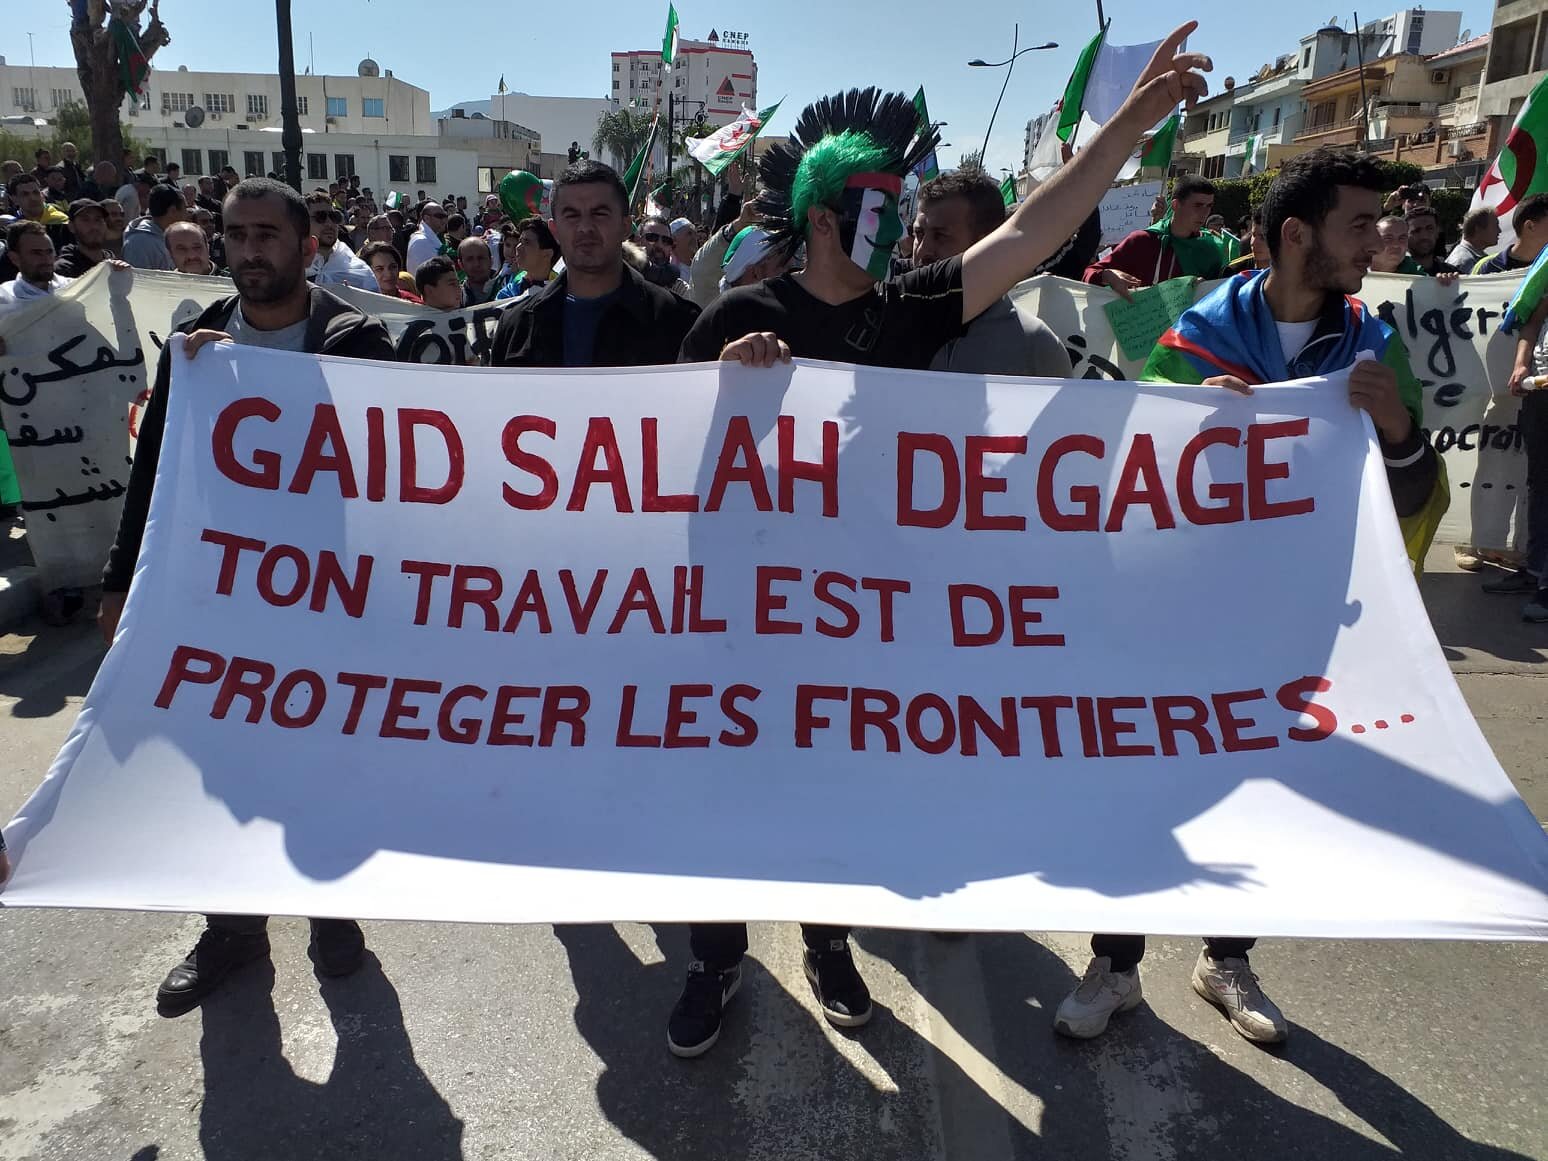 Protest in Bejaia